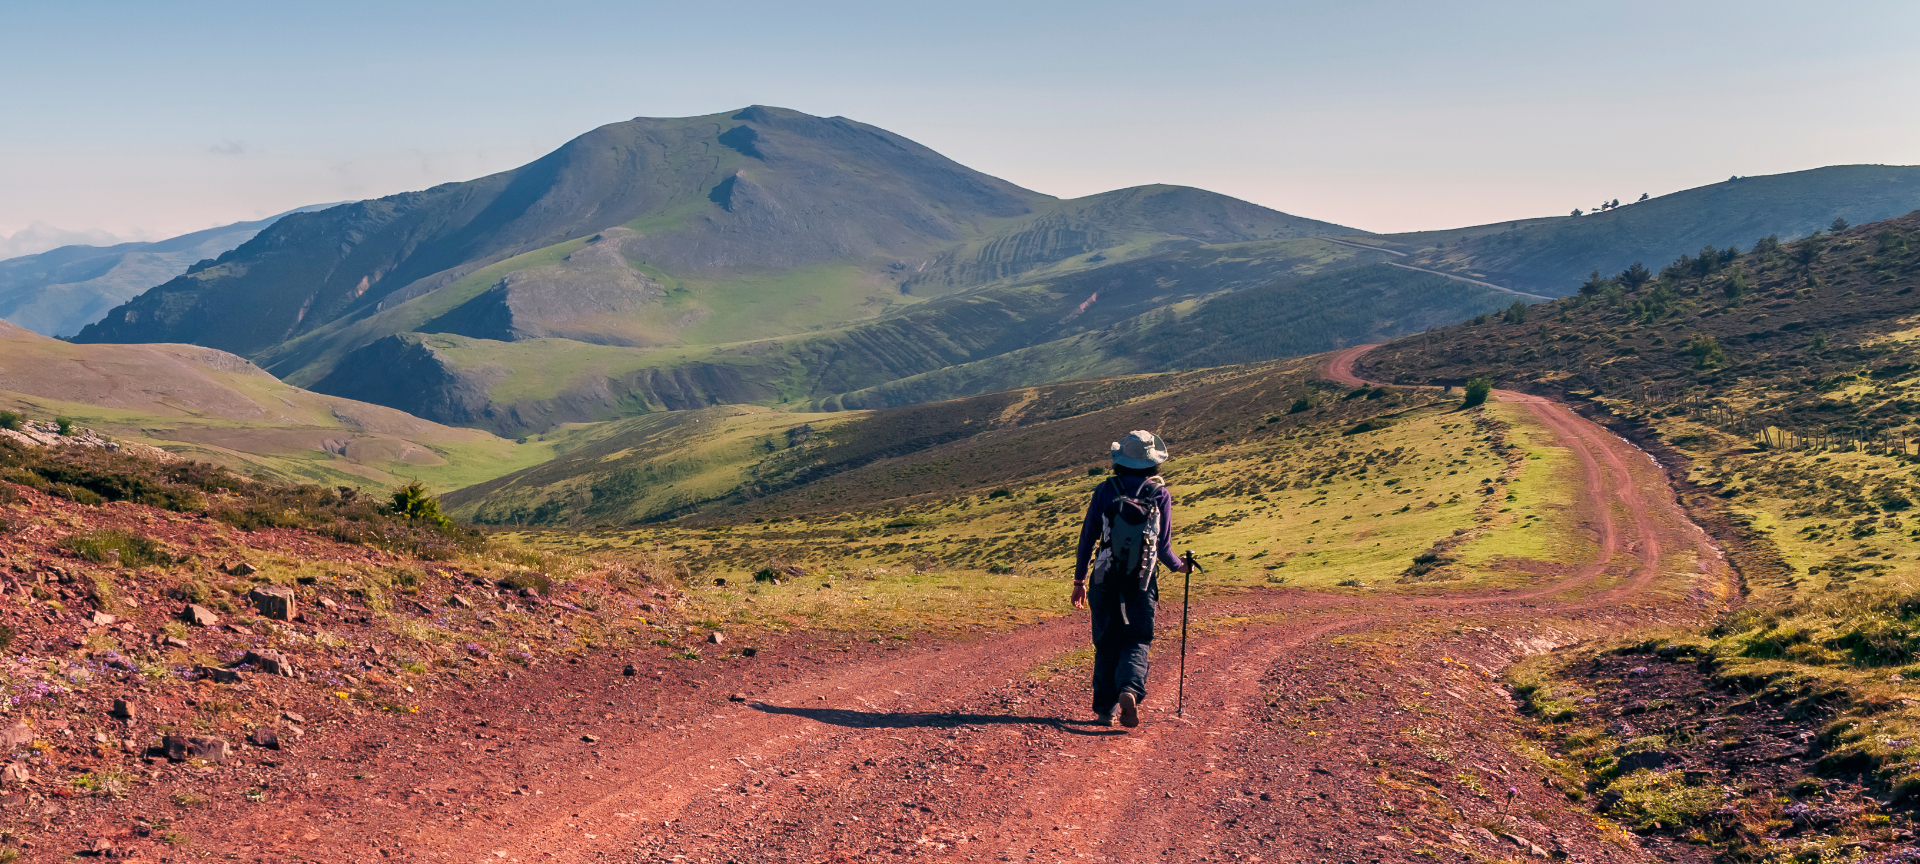 Escursionista che cammina nella sierra Cebollera durante una giornata di sole, La Rioja